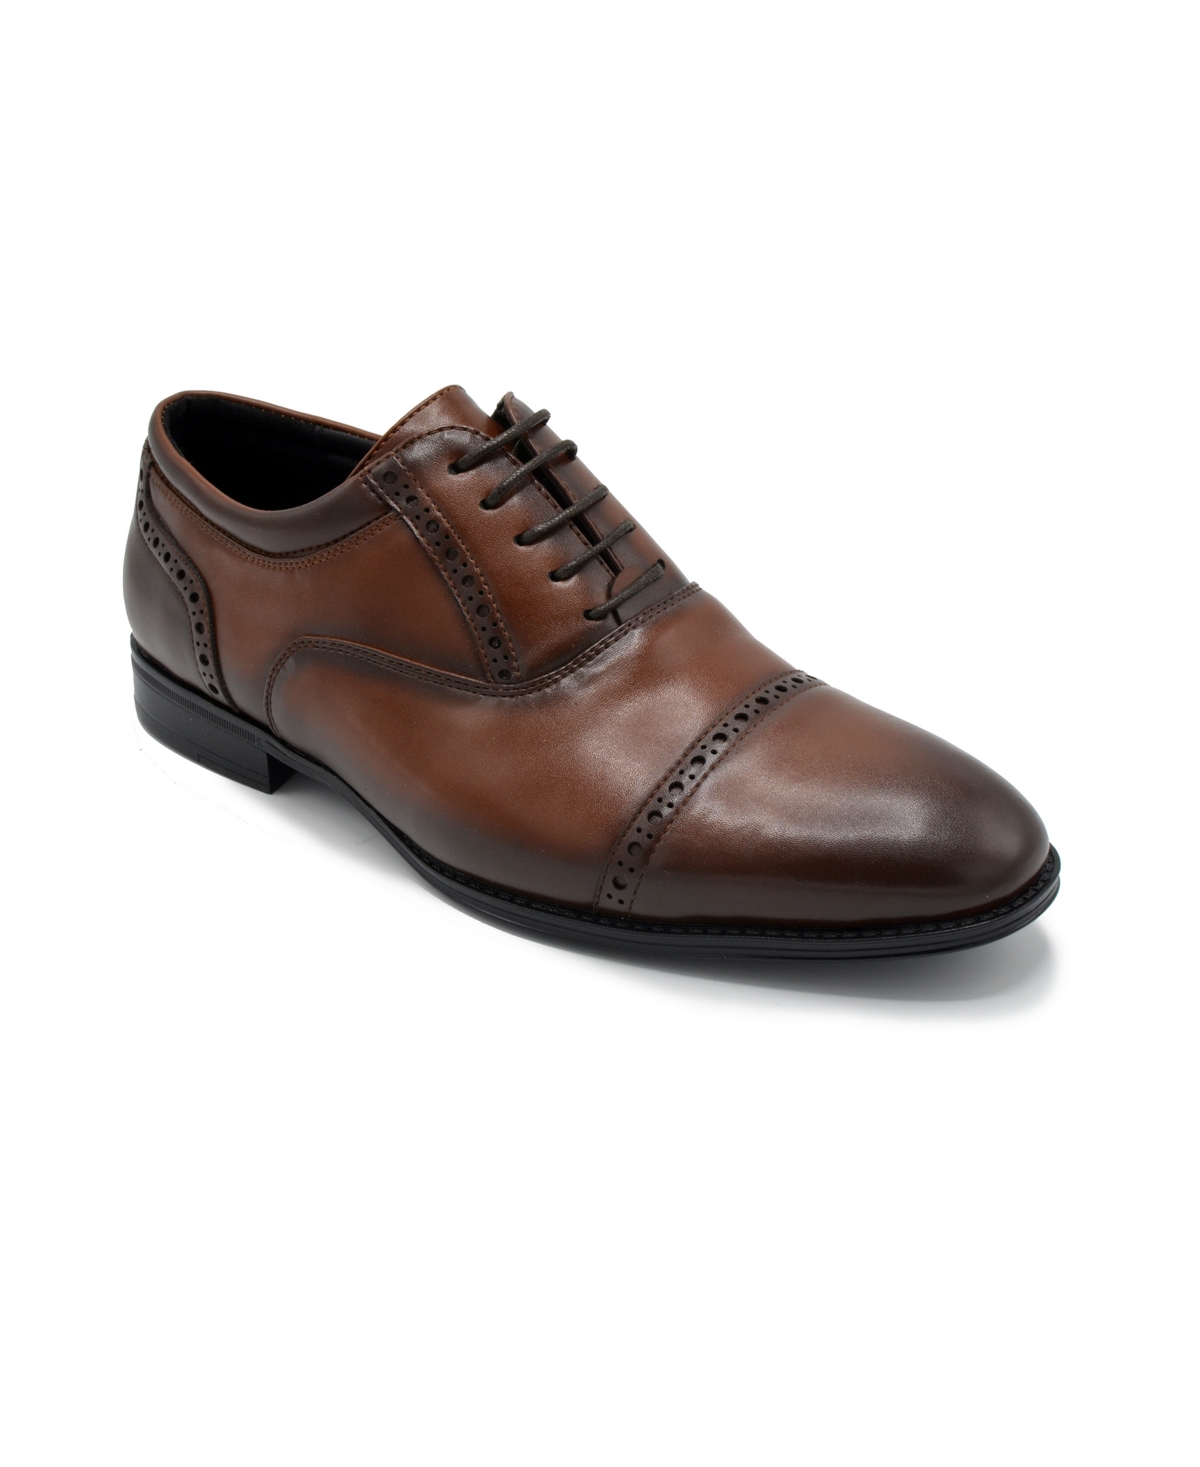 Men's Tempo Cap Toe Dress Shoes - Brown